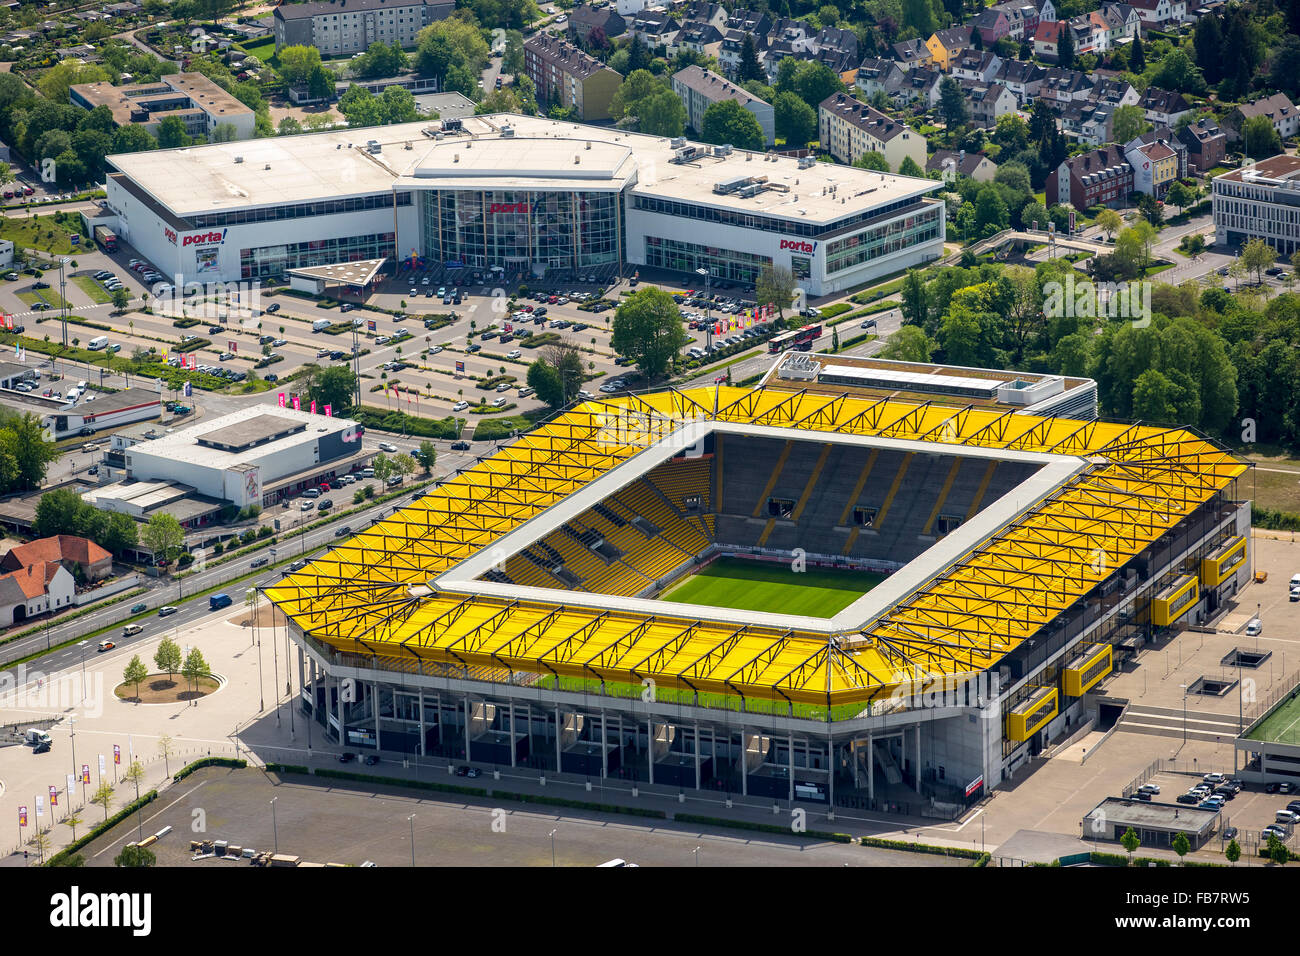 Vista aérea, Premiere League de fútbol de la Bundesliga, Tivoli, el estadio de fútbol de Alemannia Aachen, Aachen, eurorregión Mosa-rin, Foto de stock